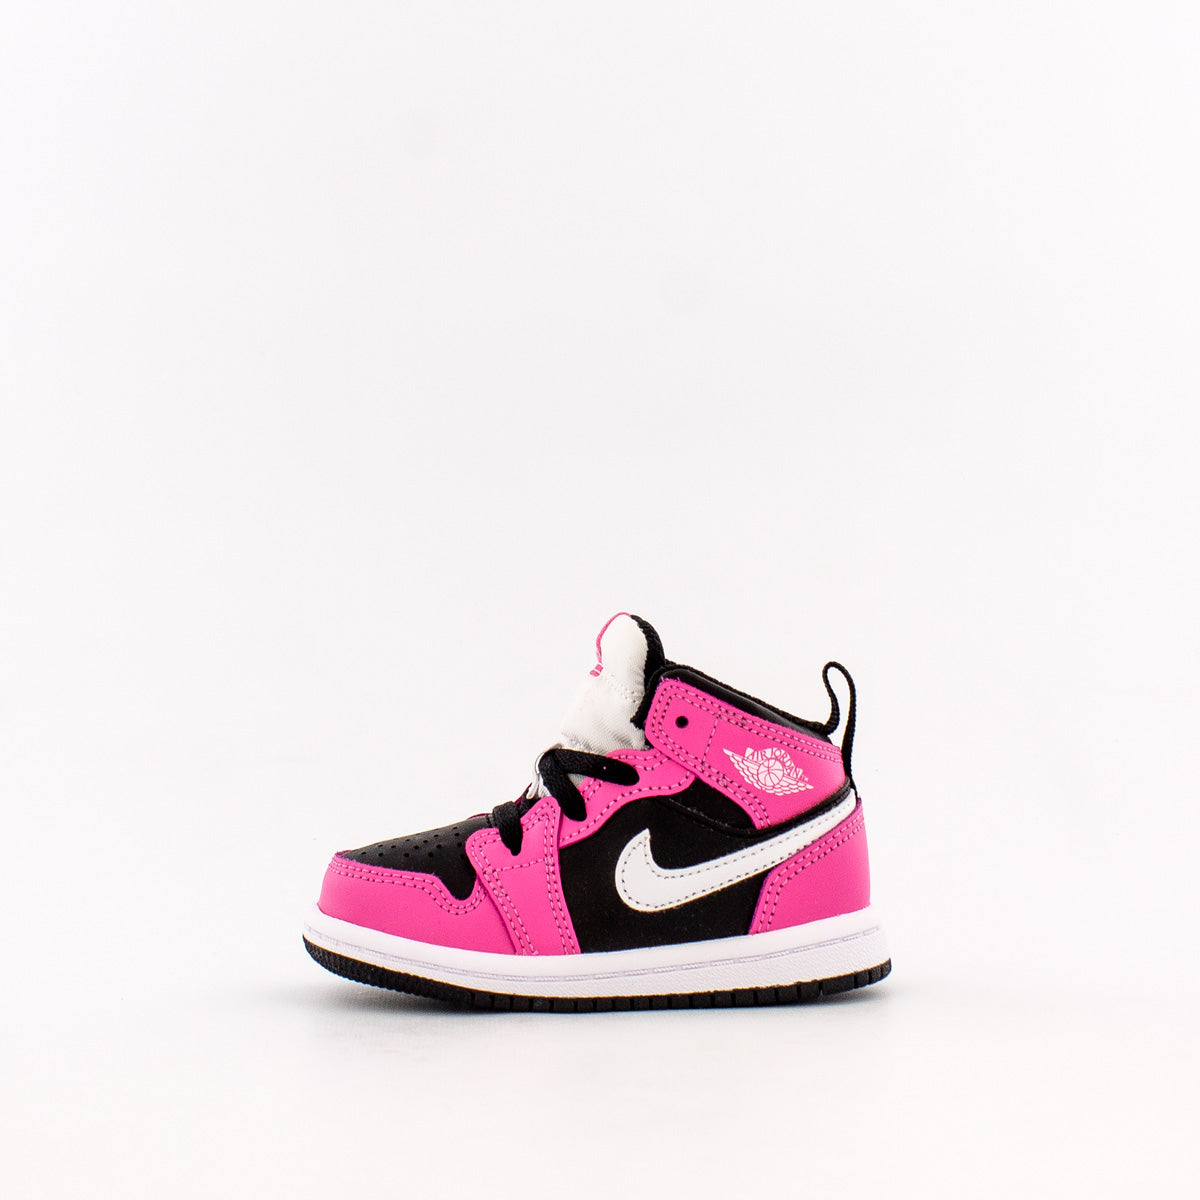 pink and black infant jordans